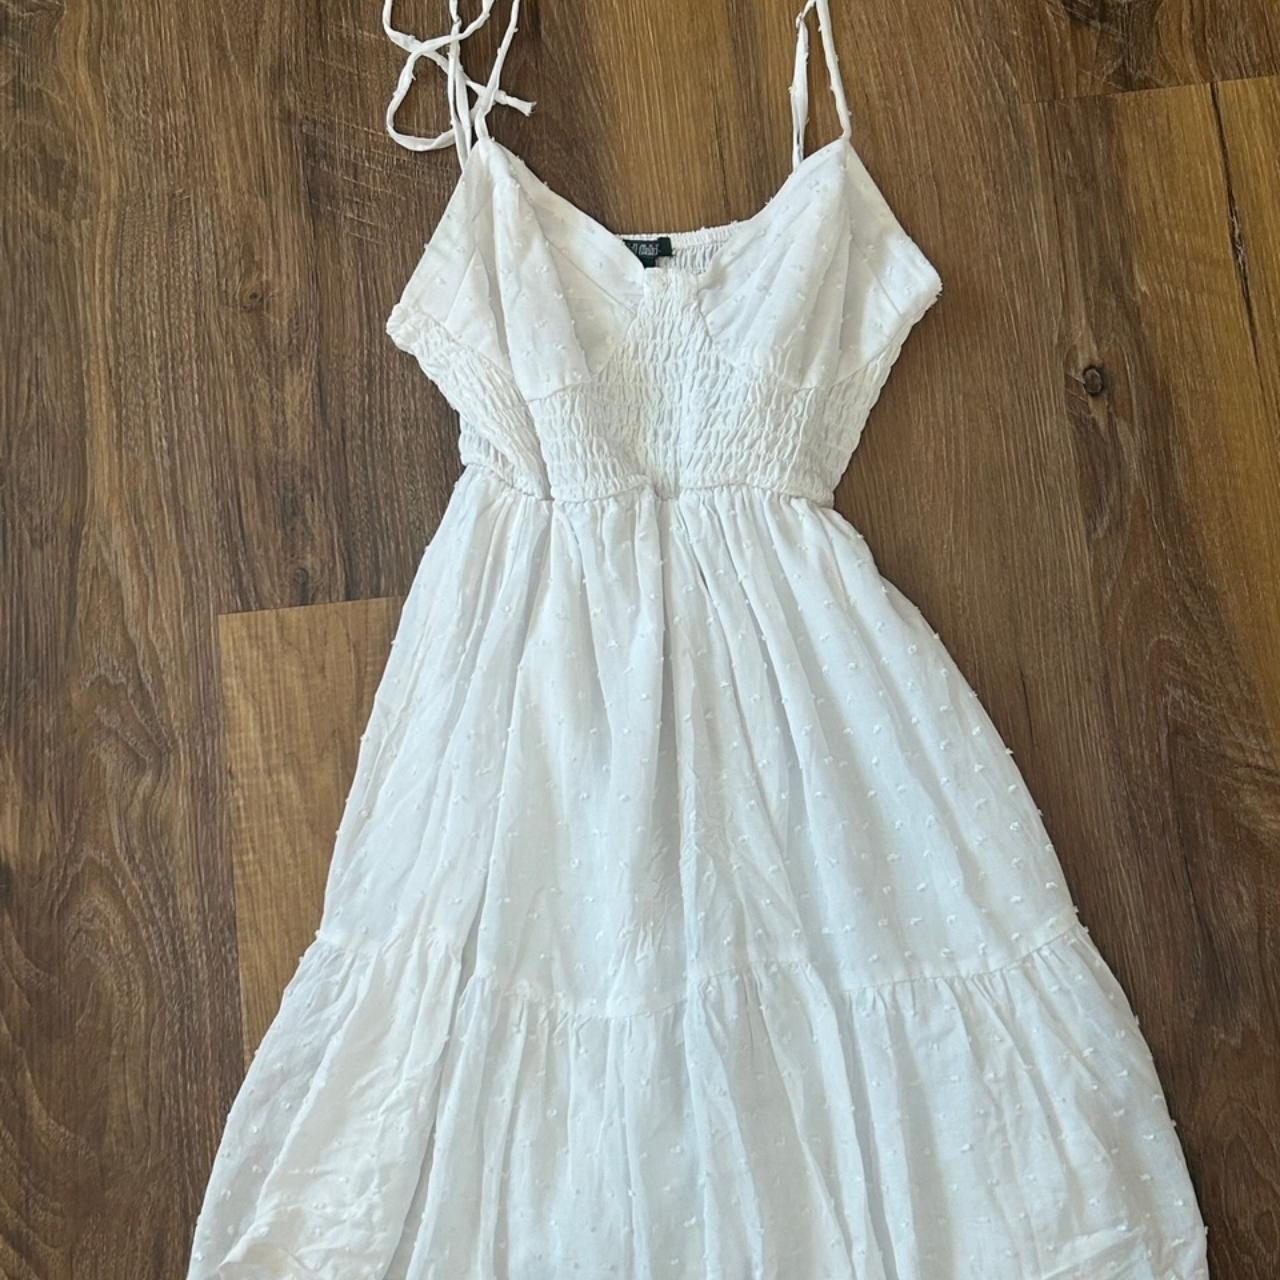 Flowy white summer dress, size small, it's not... - Depop